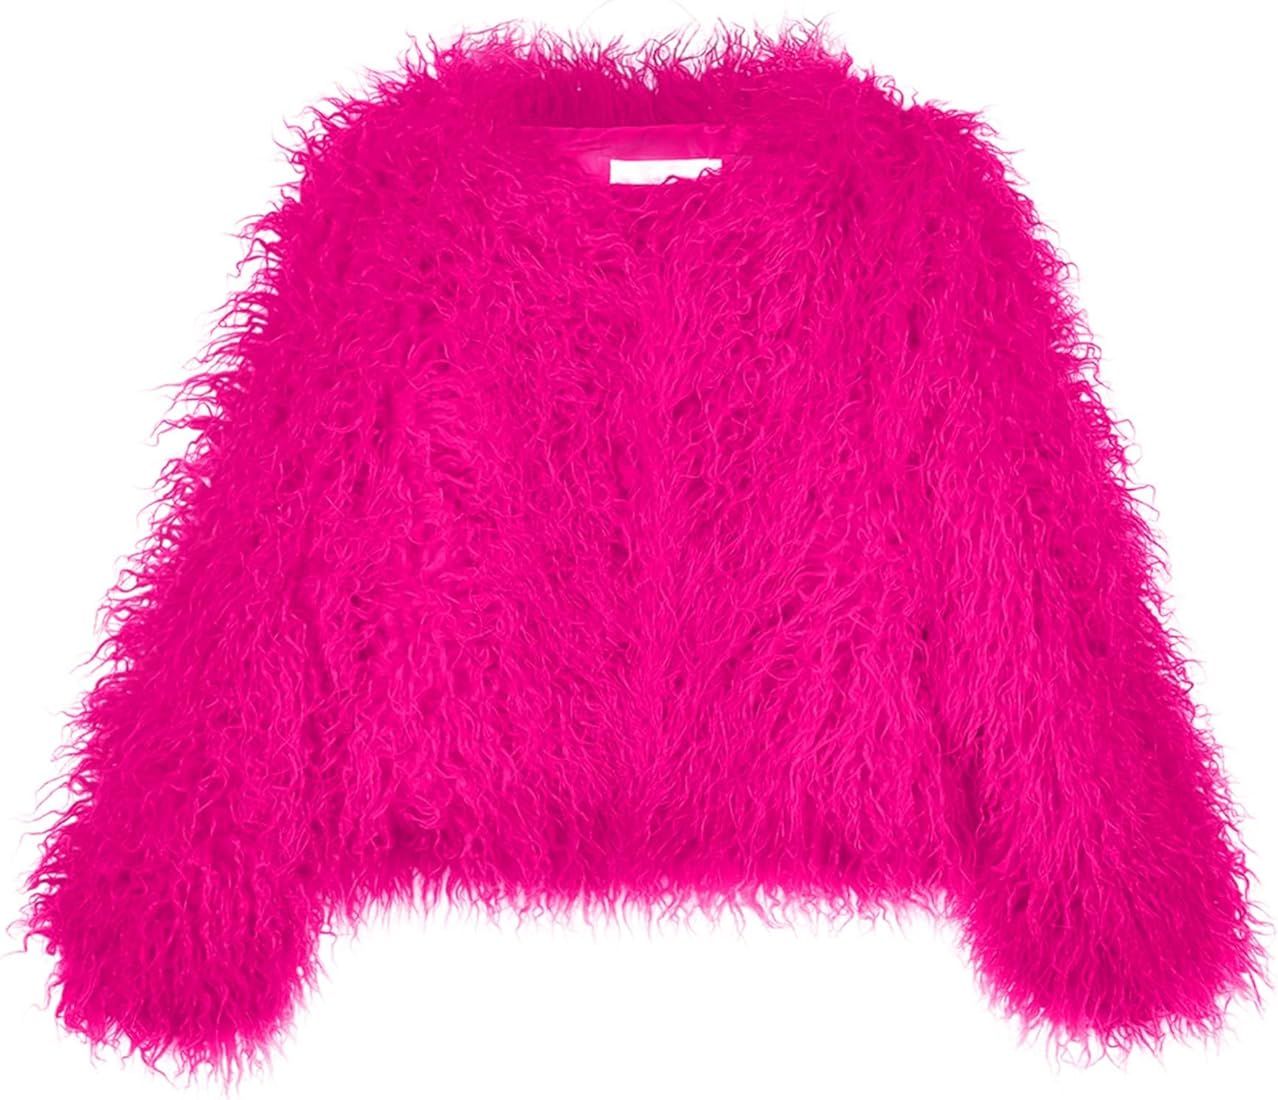 YUAKOU Women's Shaggy Faux Fur Outwear Coat Jacket Long Sleeve Warm Winter | Amazon (US)